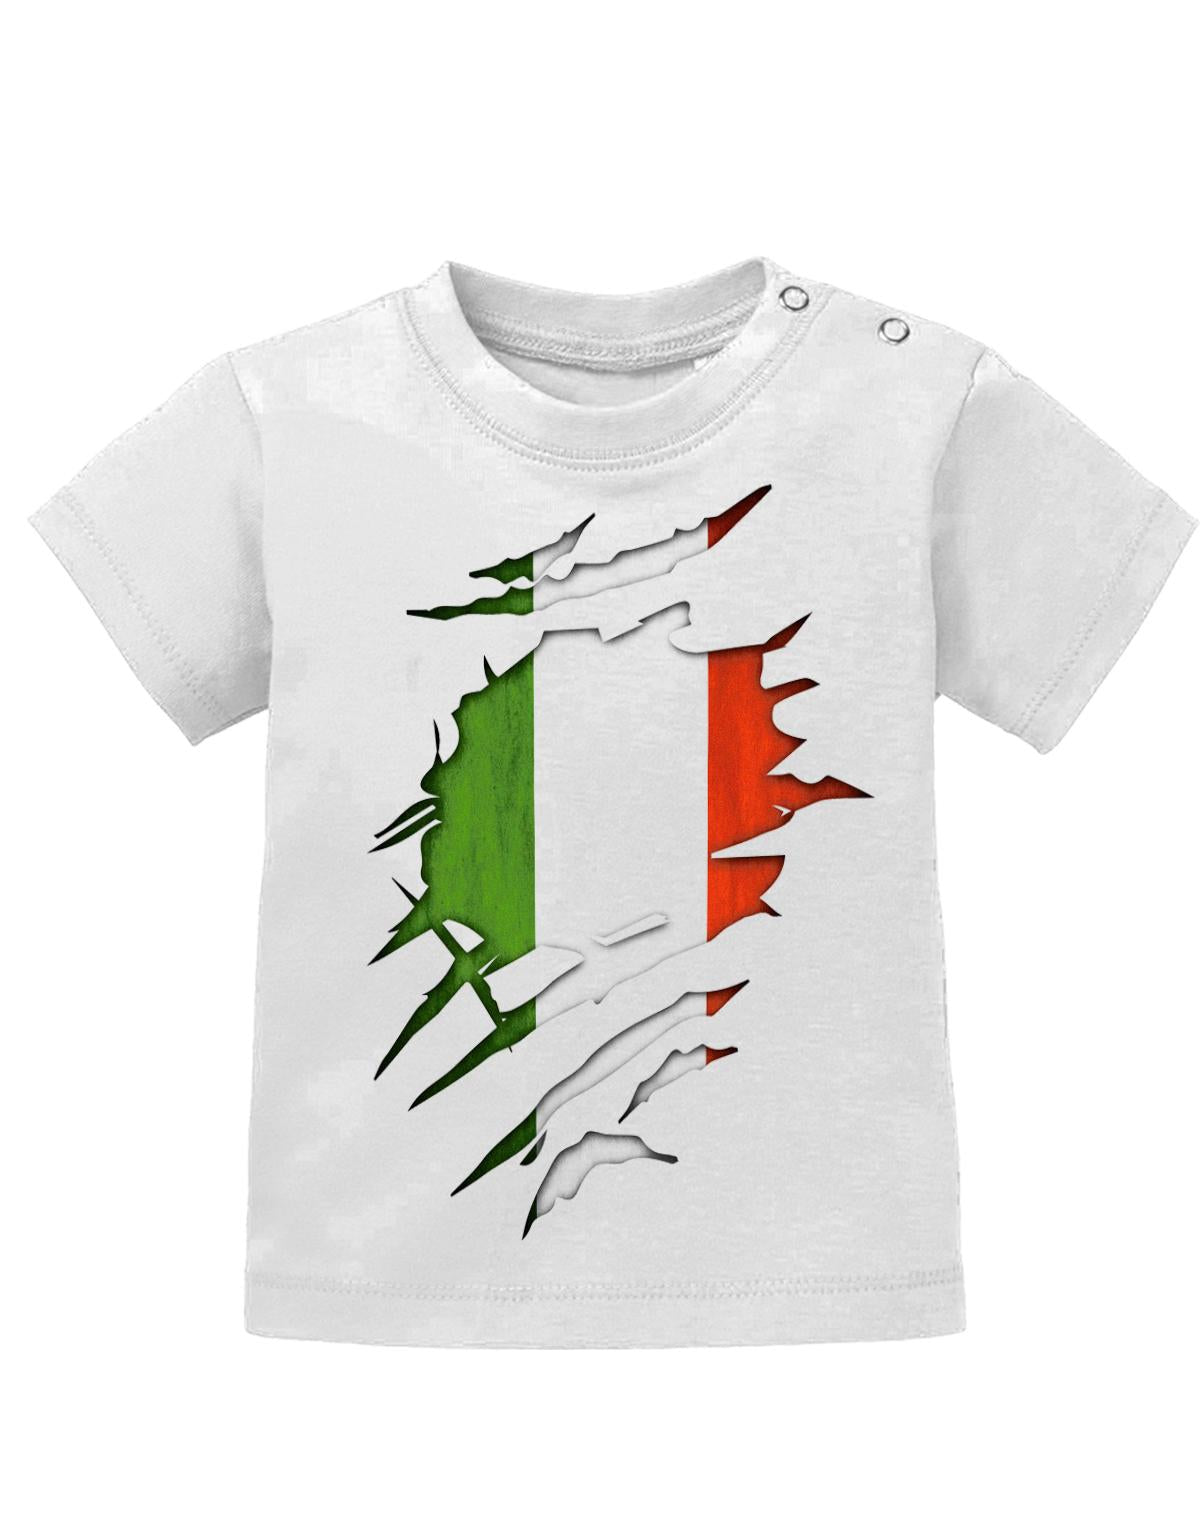 Italien T Shirt für Junge und Mädchen. Italienische Flagge Design aufgerissen, damit man sieht, dass ein Italiener im Shirt steckt.